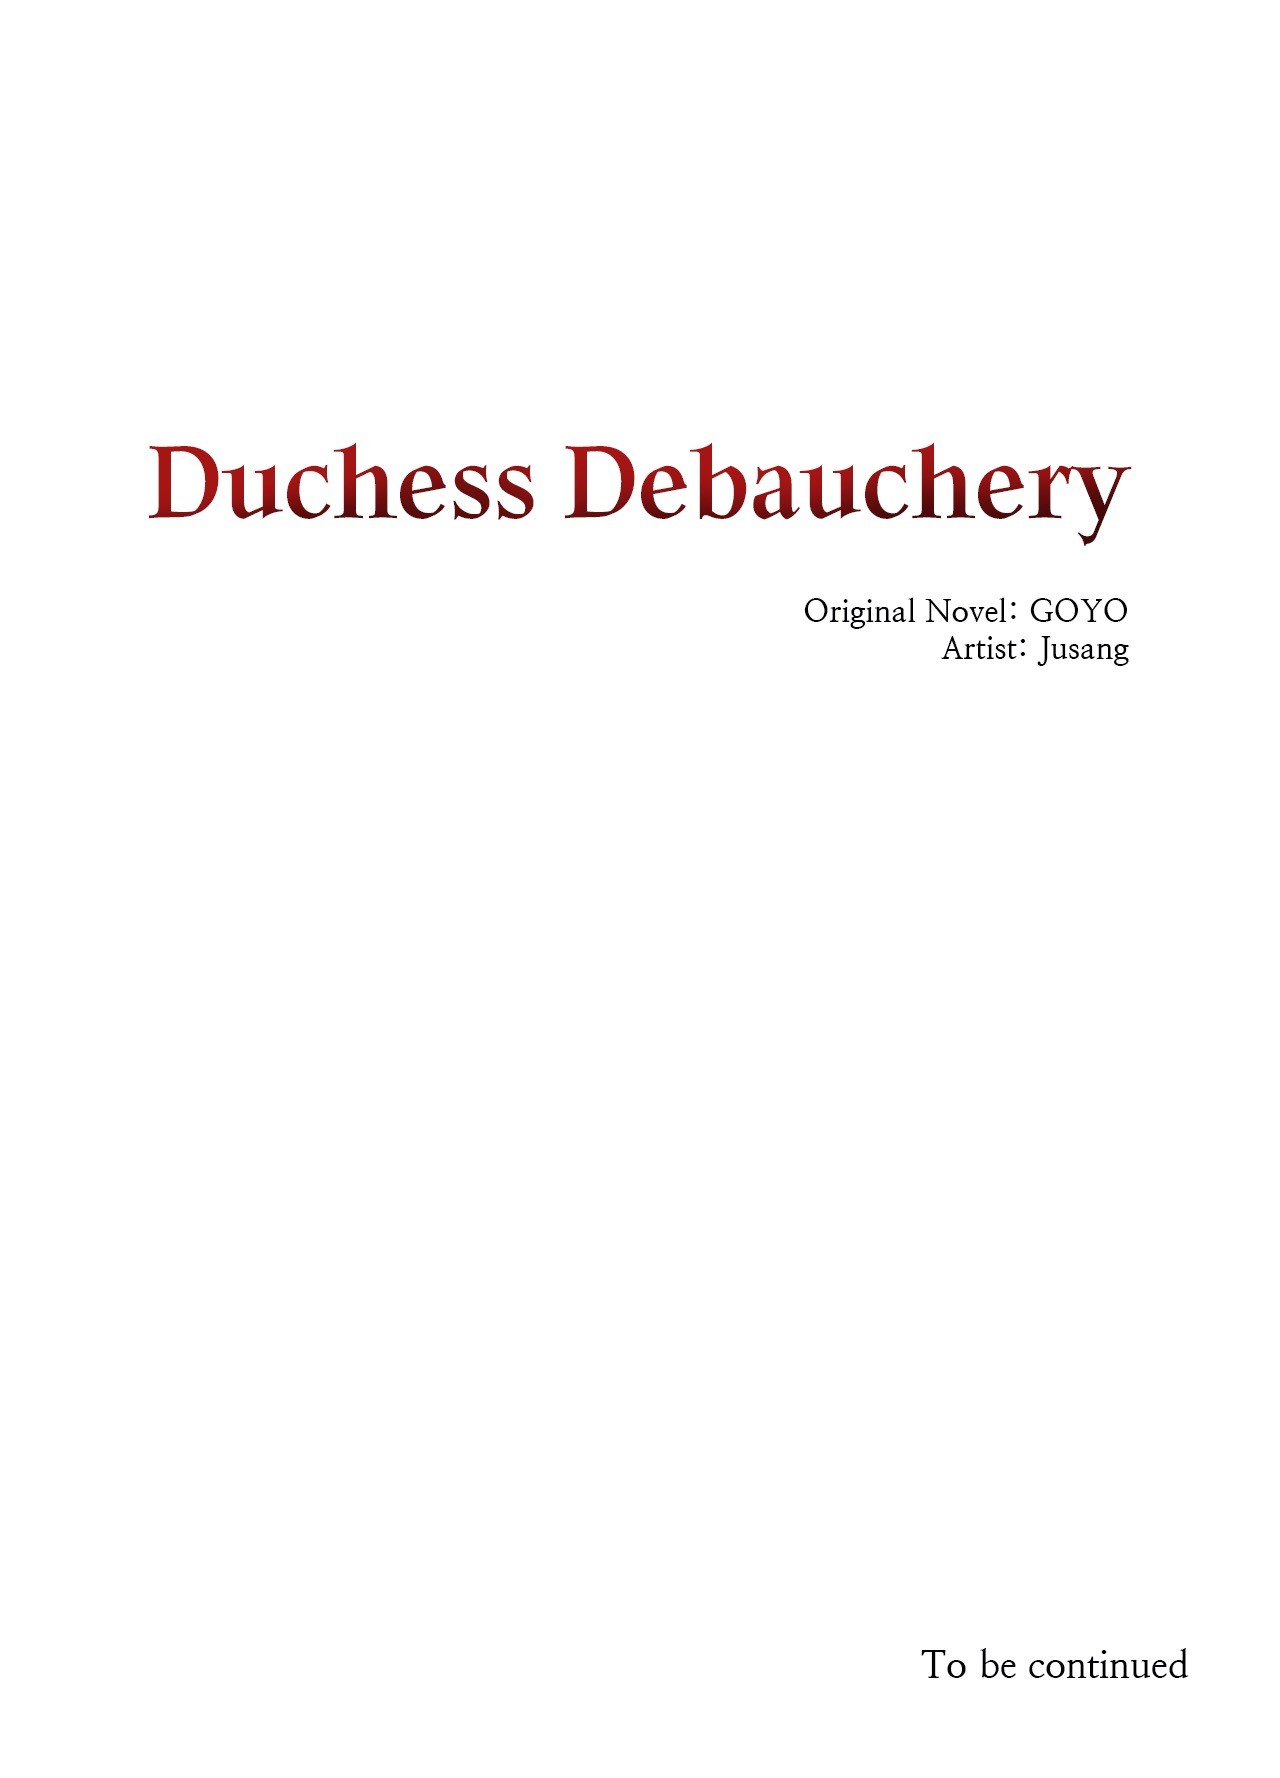 Duchess Debauchery image